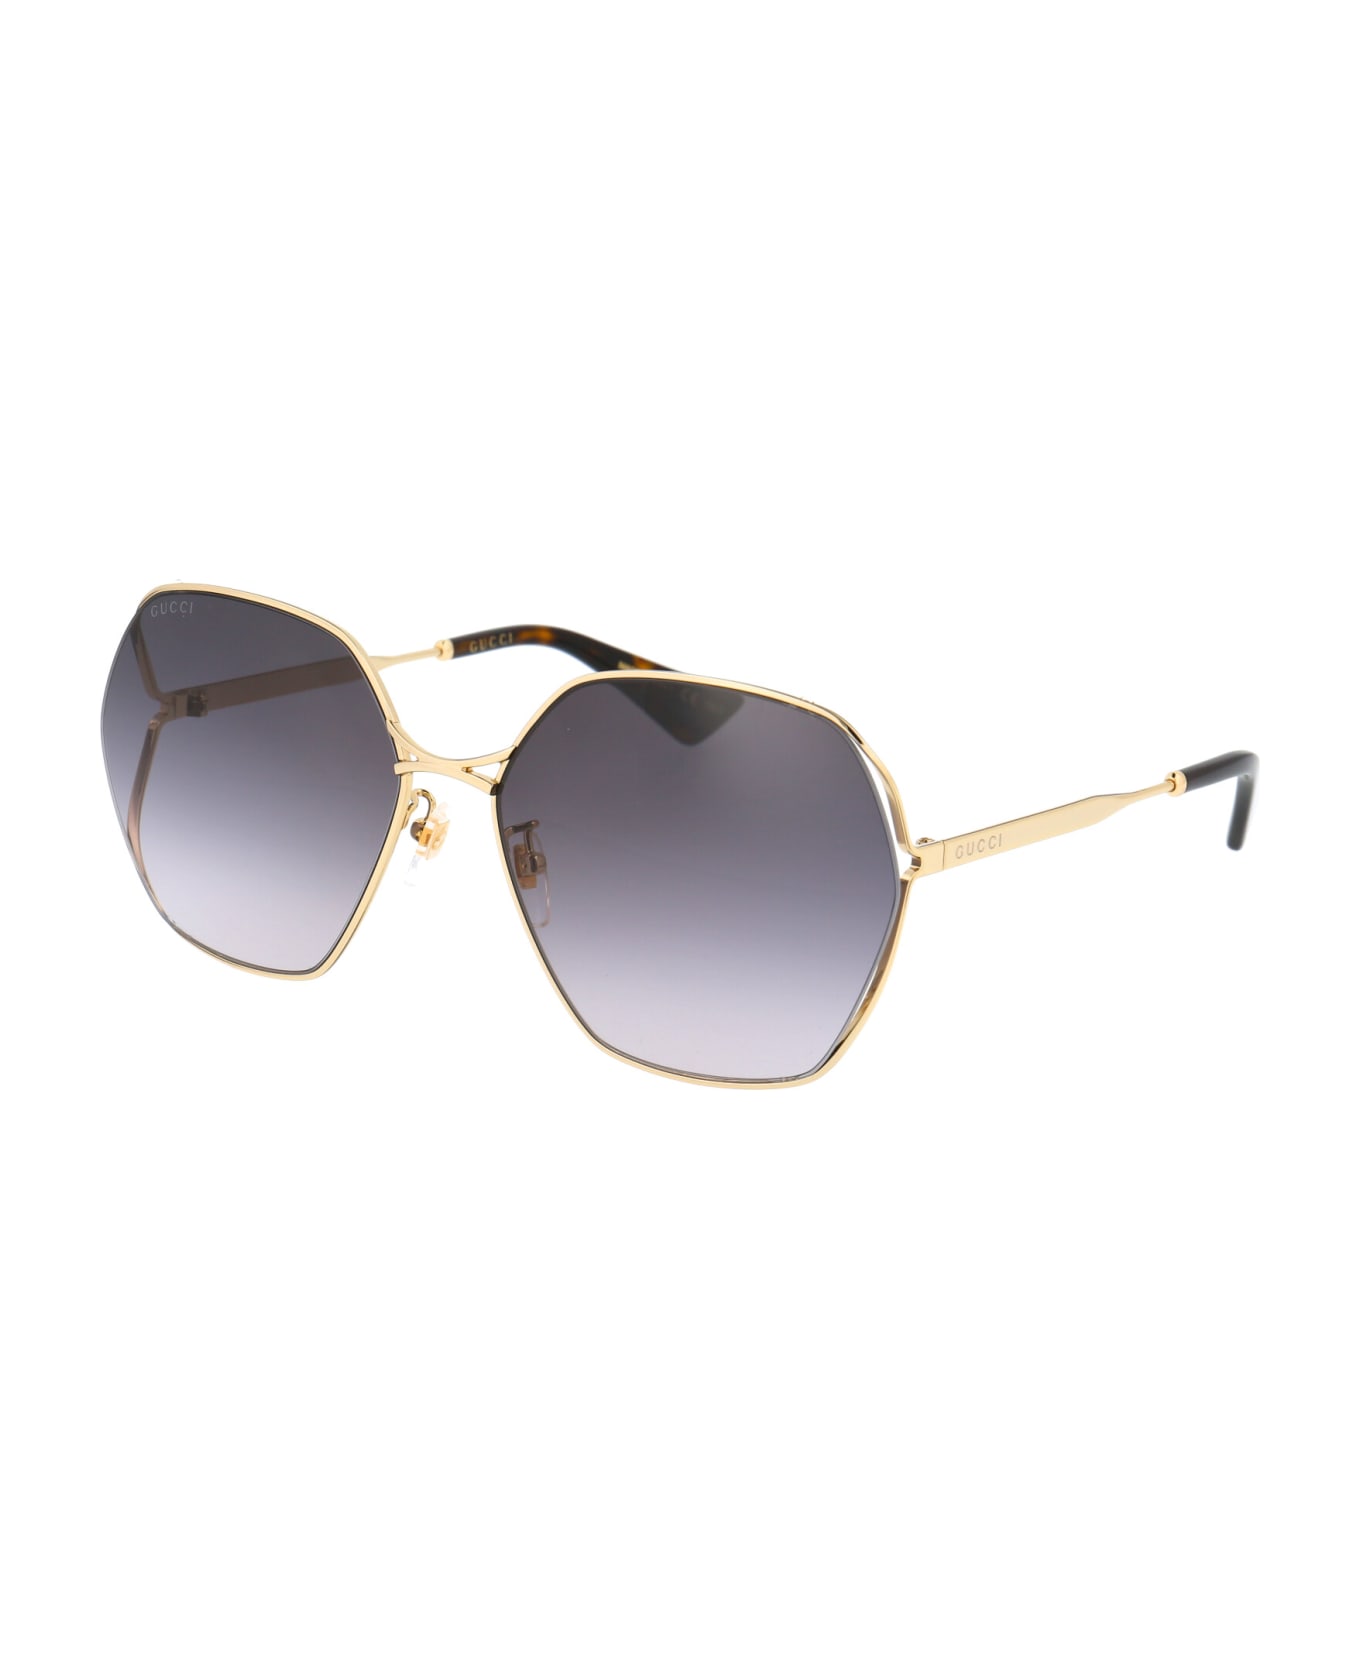 Gucci Eyewear Gg0818sa Sunglasses - 001 GOLD GOLD GREY